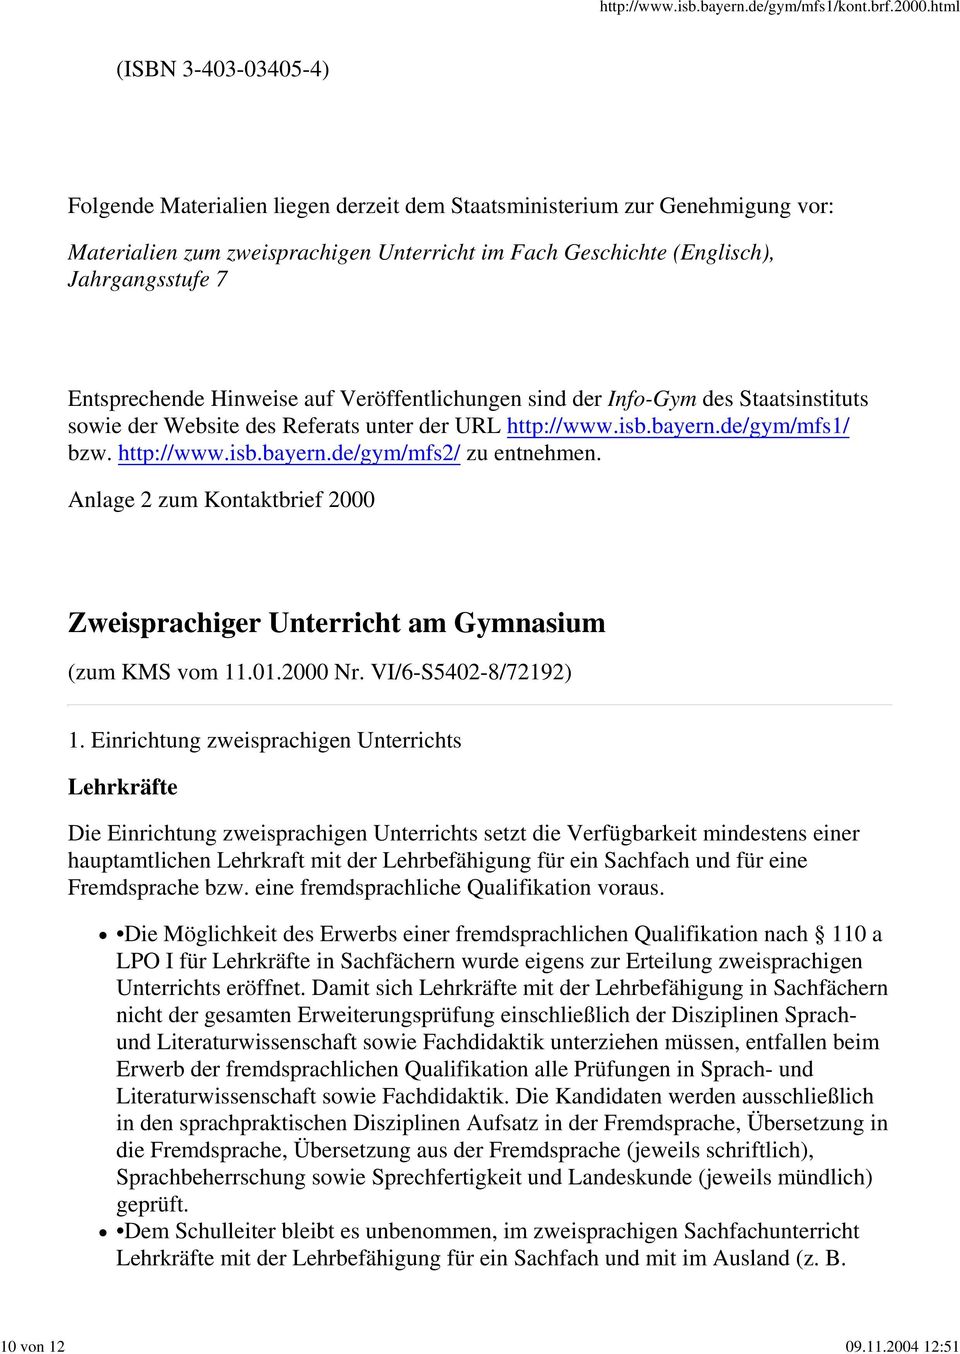 7 Entsprechende Hinweise auf Veröffentlichungen sind der Info-Gym des Staatsinstituts sowie der Website des Referats unter der URL http://www.isb.bayern.de/gym/mfs1/ bzw. http://www.isb.bayern.de/gym/mfs2/ zu entnehmen.